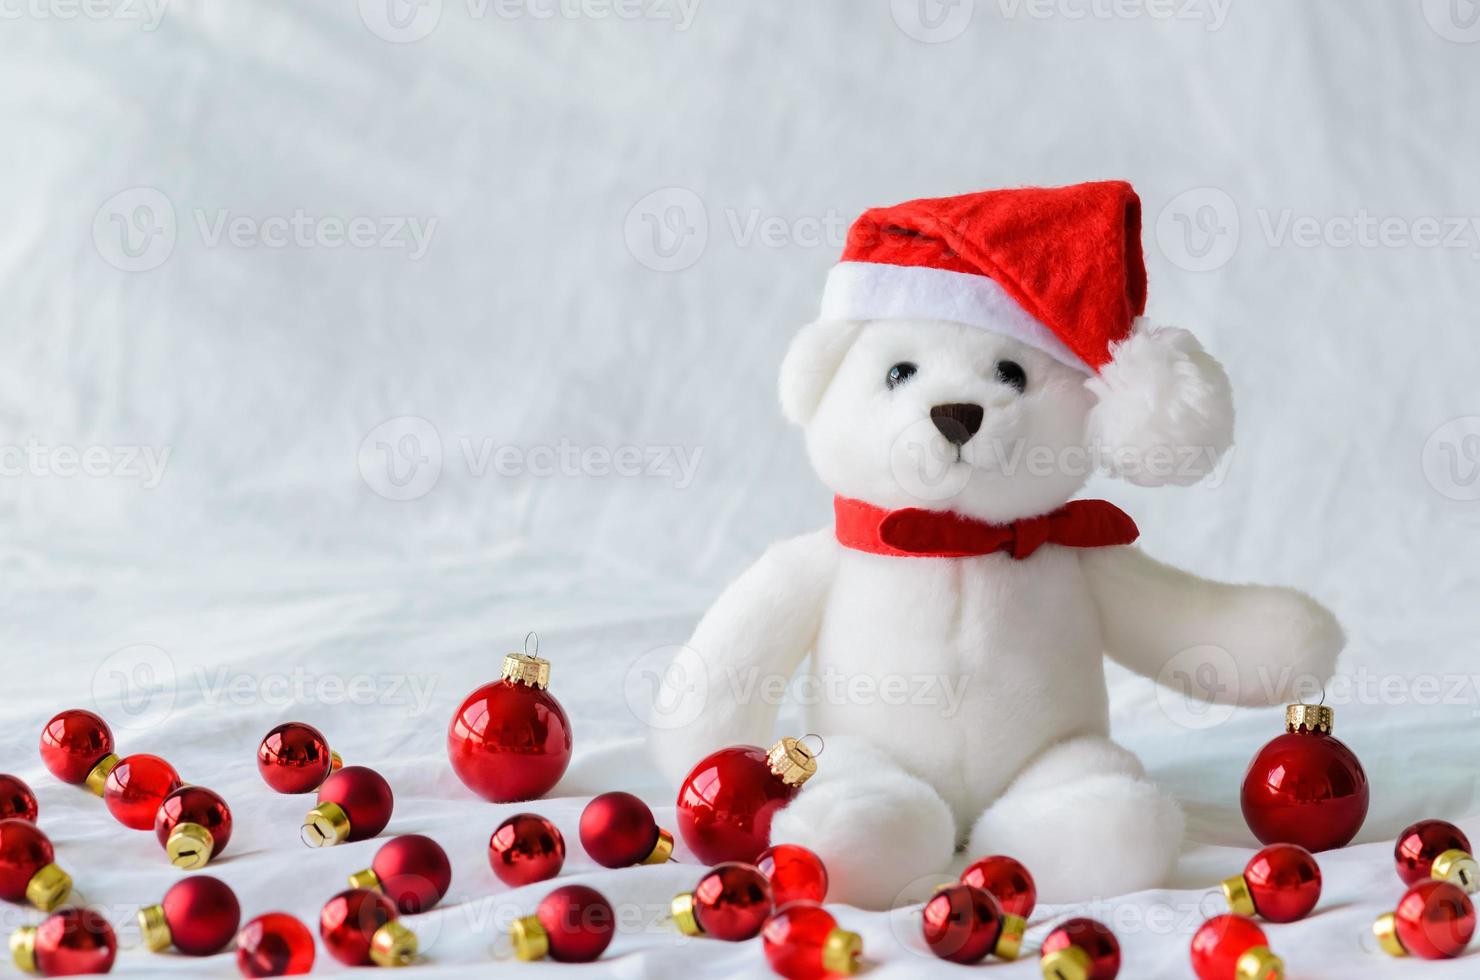 enfoque selectivo en los ojos de oso de peluche de santa claus que usan sombrero sentado con adornos navideños rojos sobre fondo de tela blanca. foto